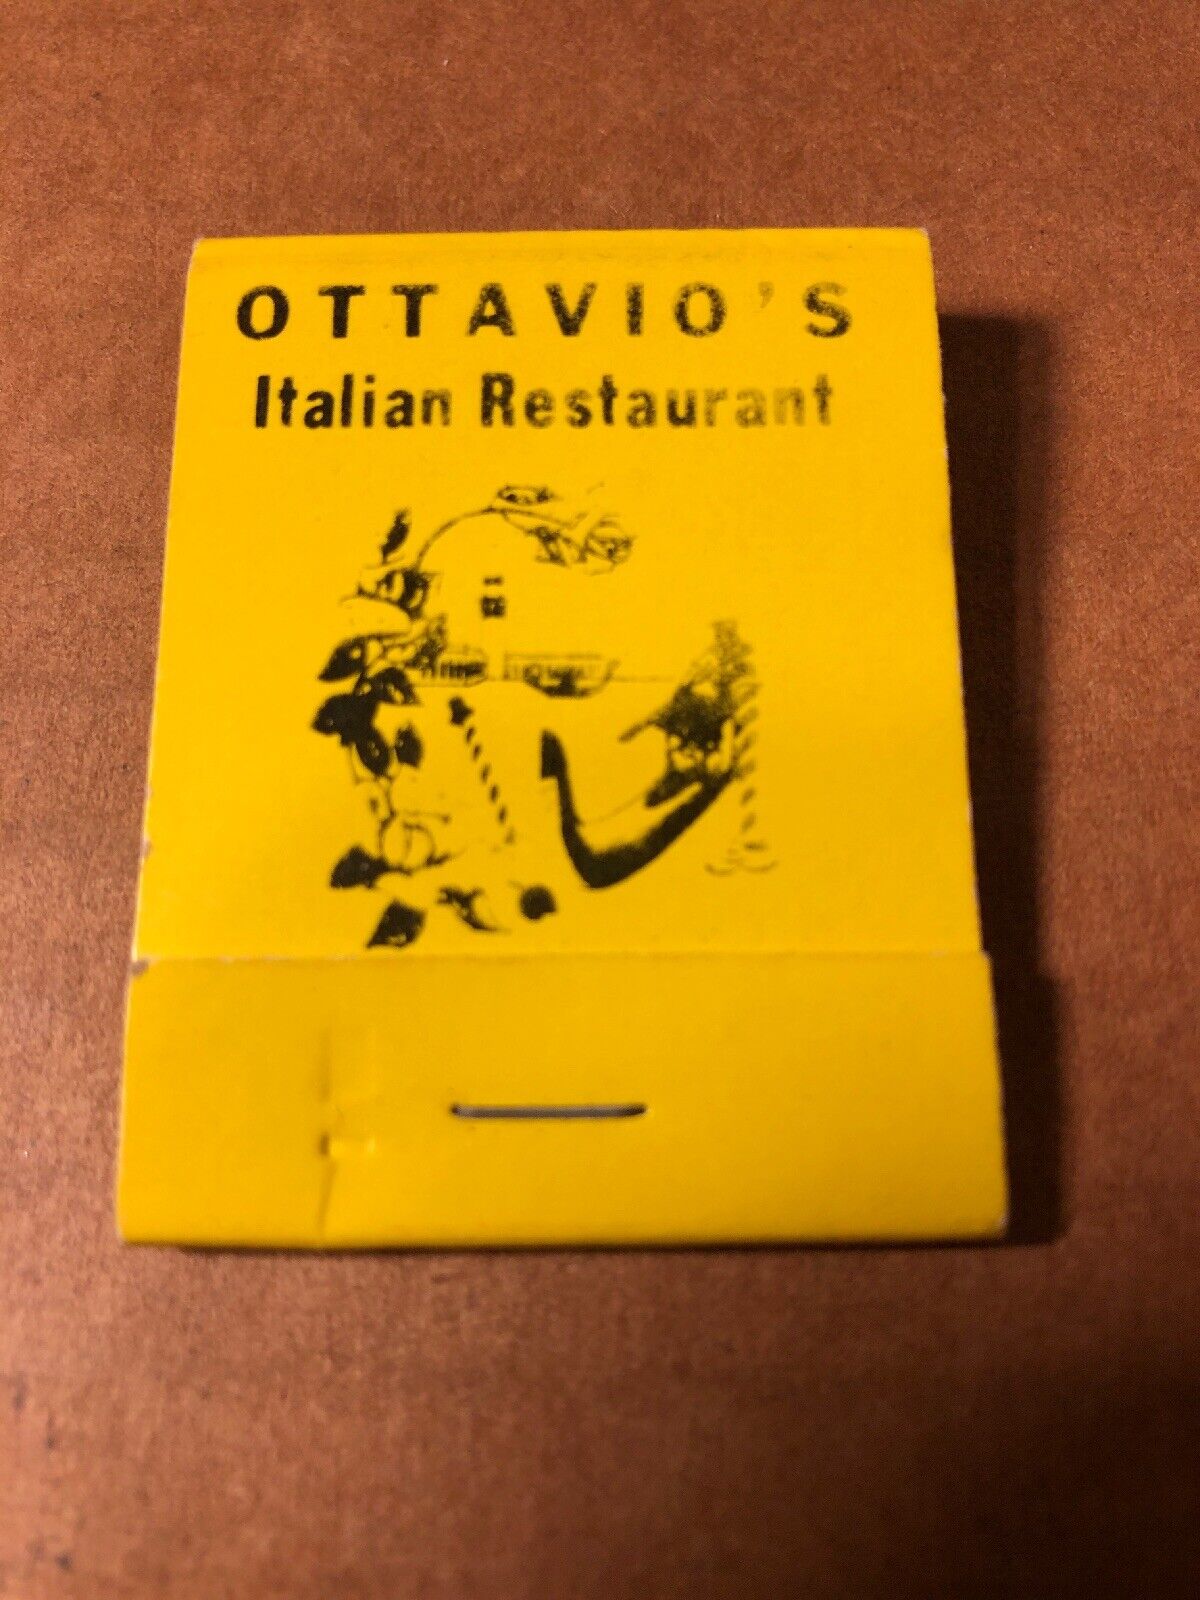 Ottavio’s Italian Restaurant Vintage Yellow Matchbook, Camarillo, CA